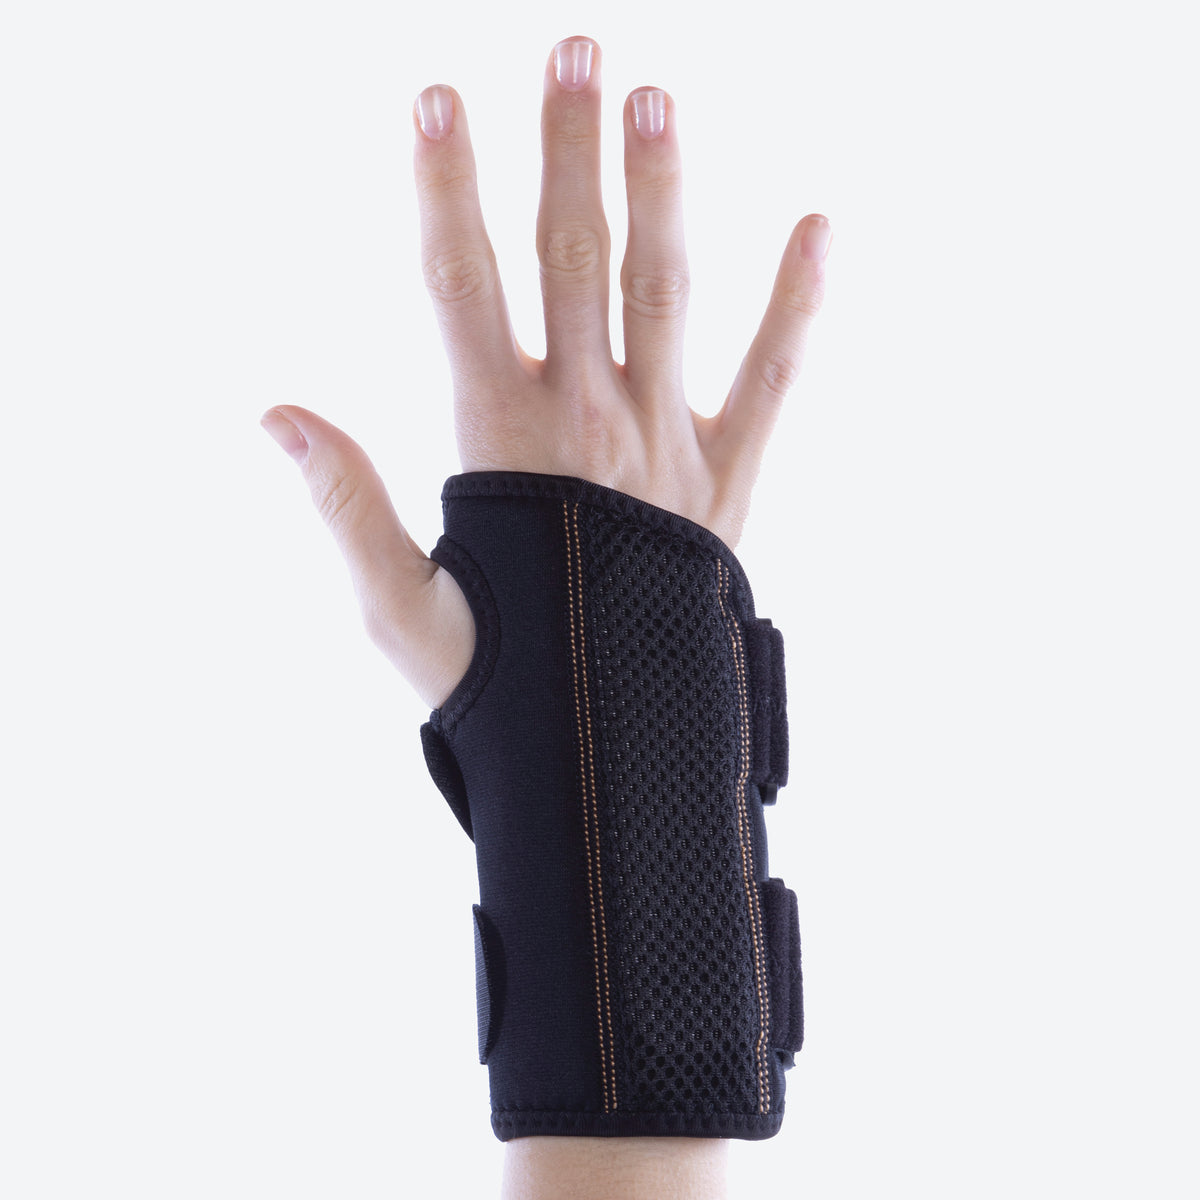 ACE™ Brand Reversible Splint Wrist Brace